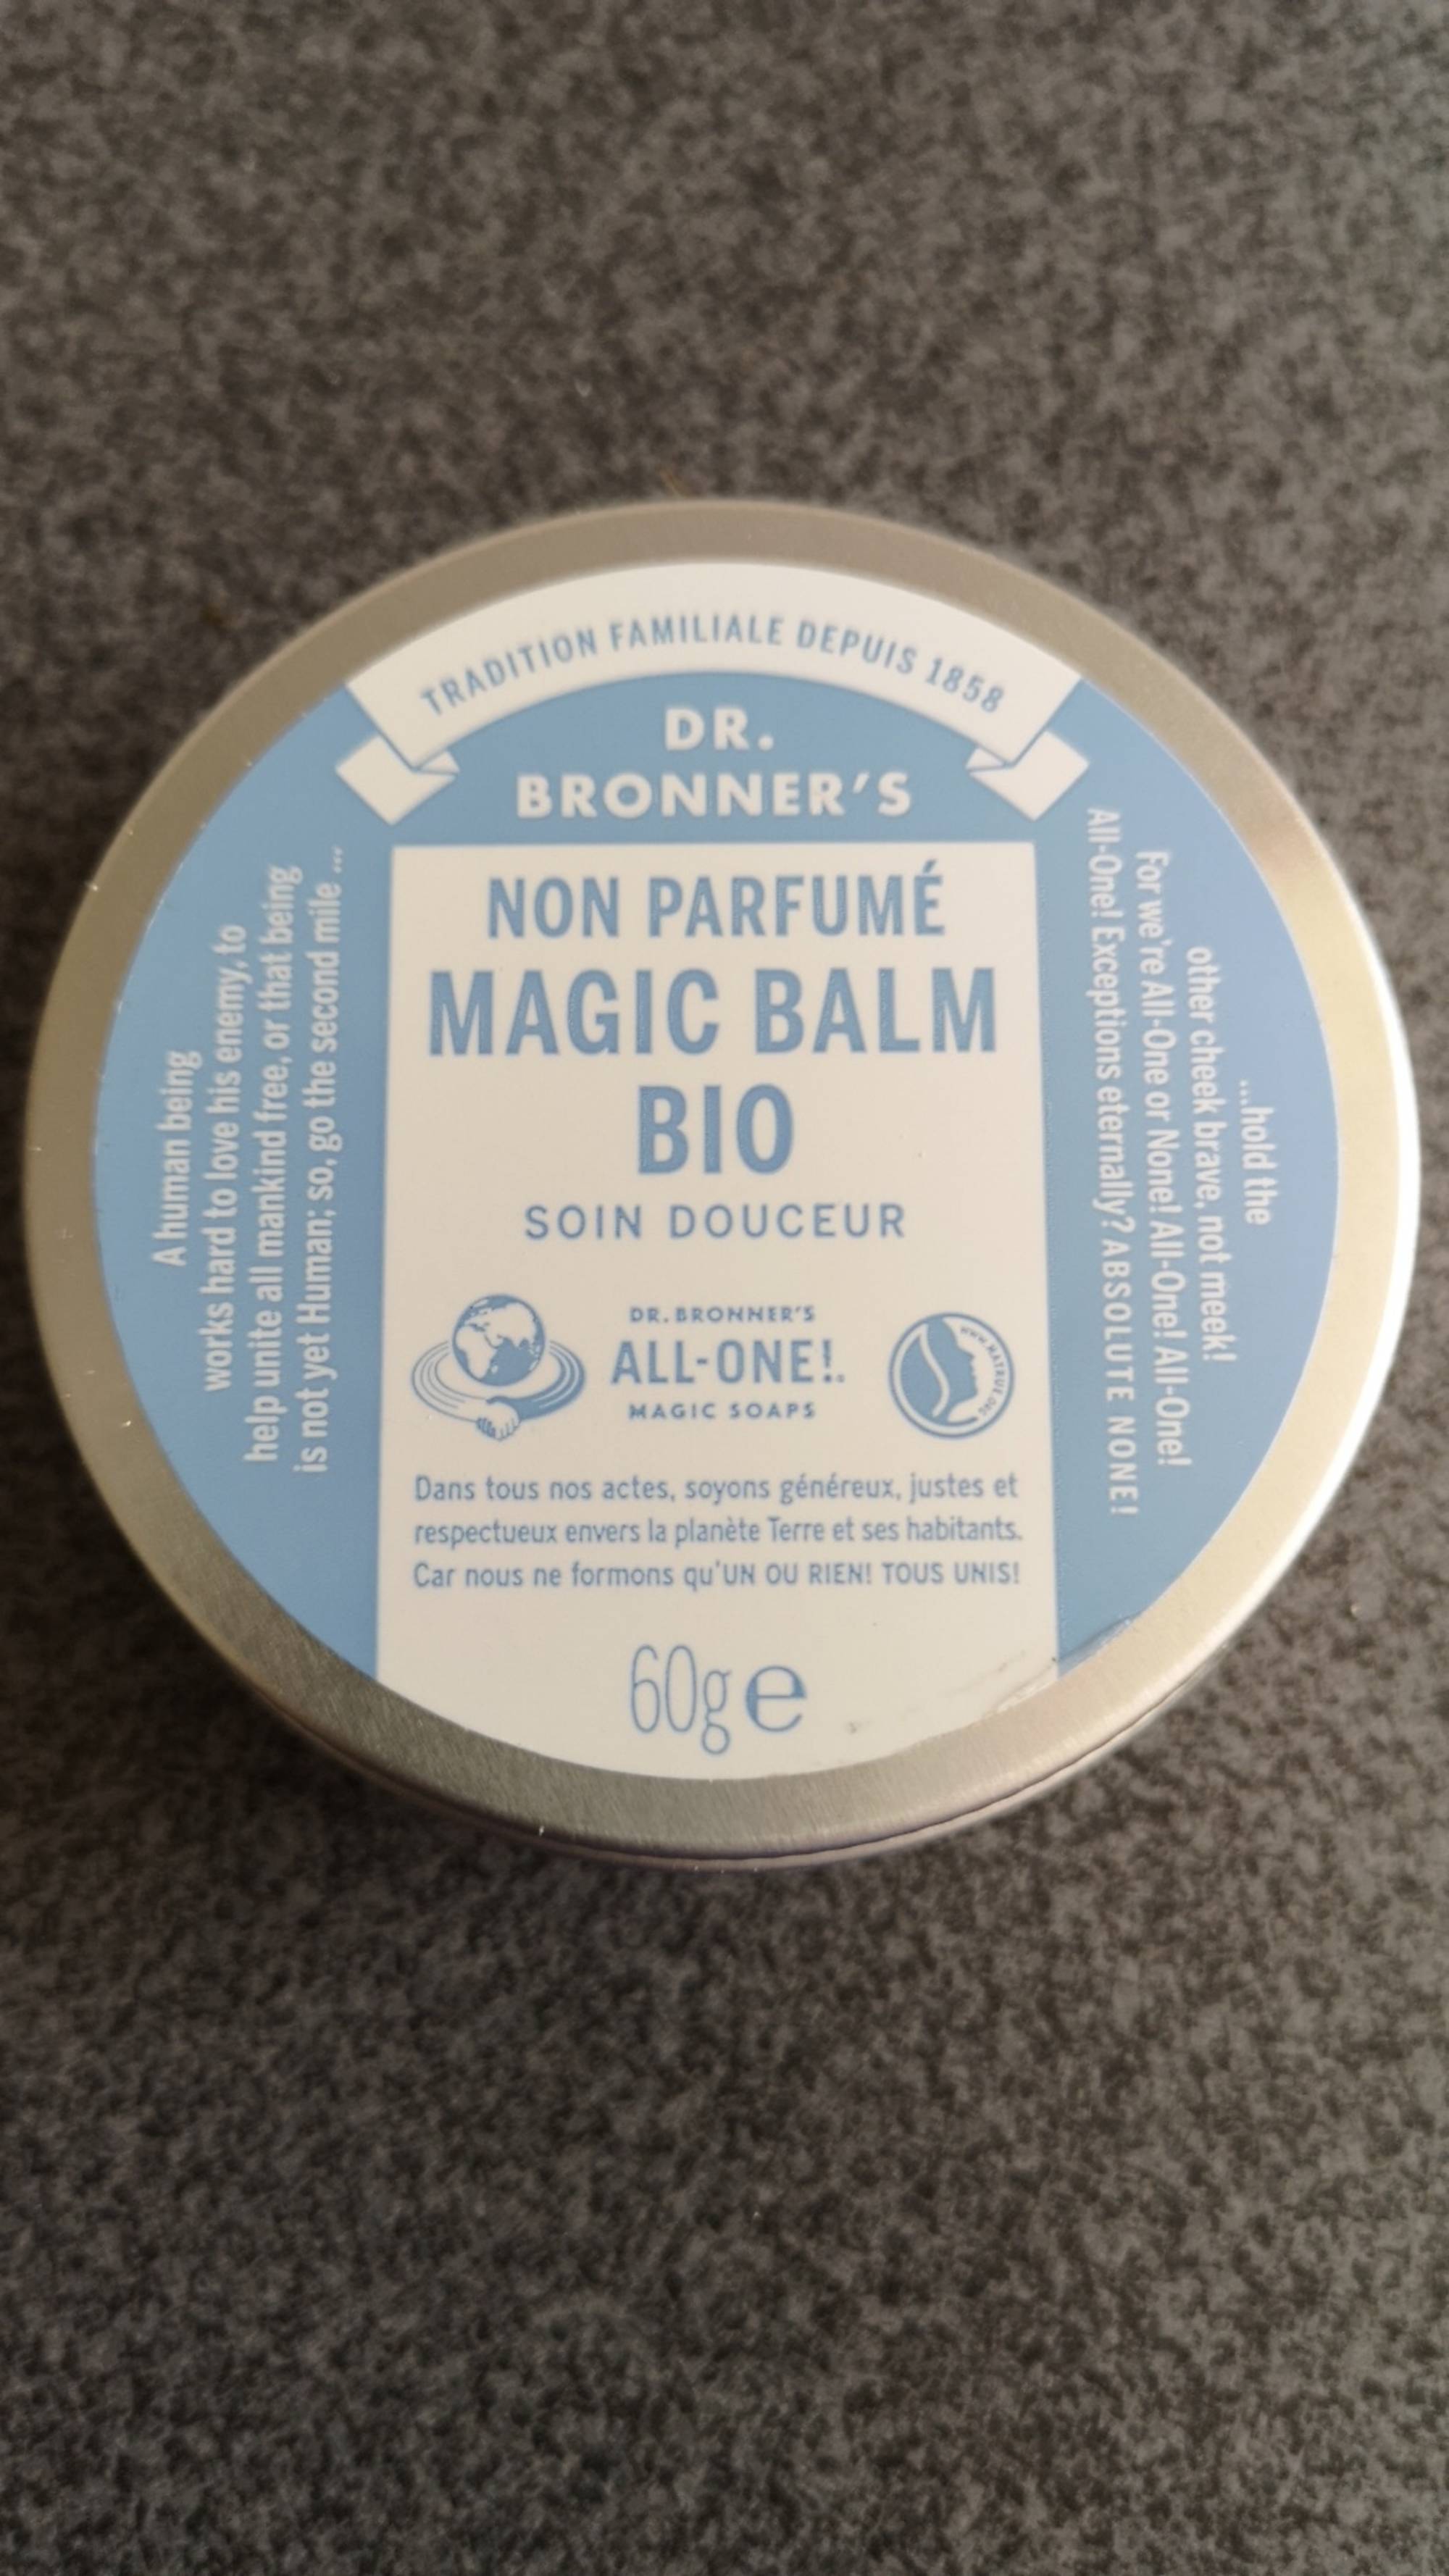 DR. BRONNER'S - Magic balm bio non parfumé